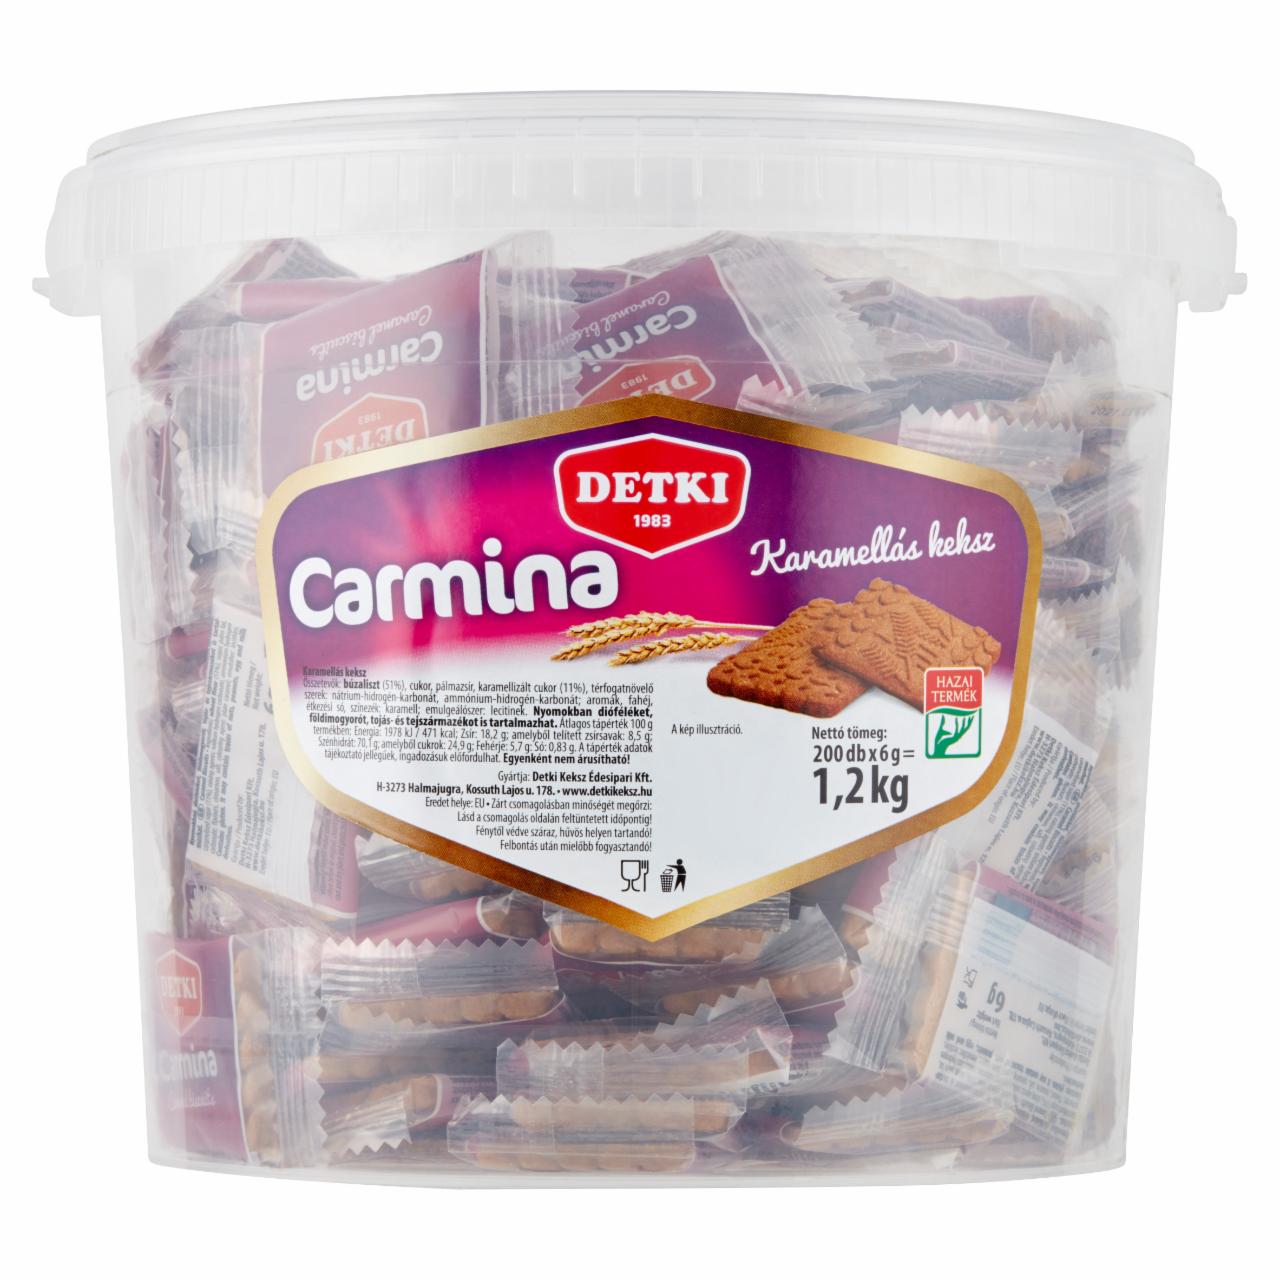 Képek - Detki Carmina karamellás keksz 200 x 6 g (1,2 kg)